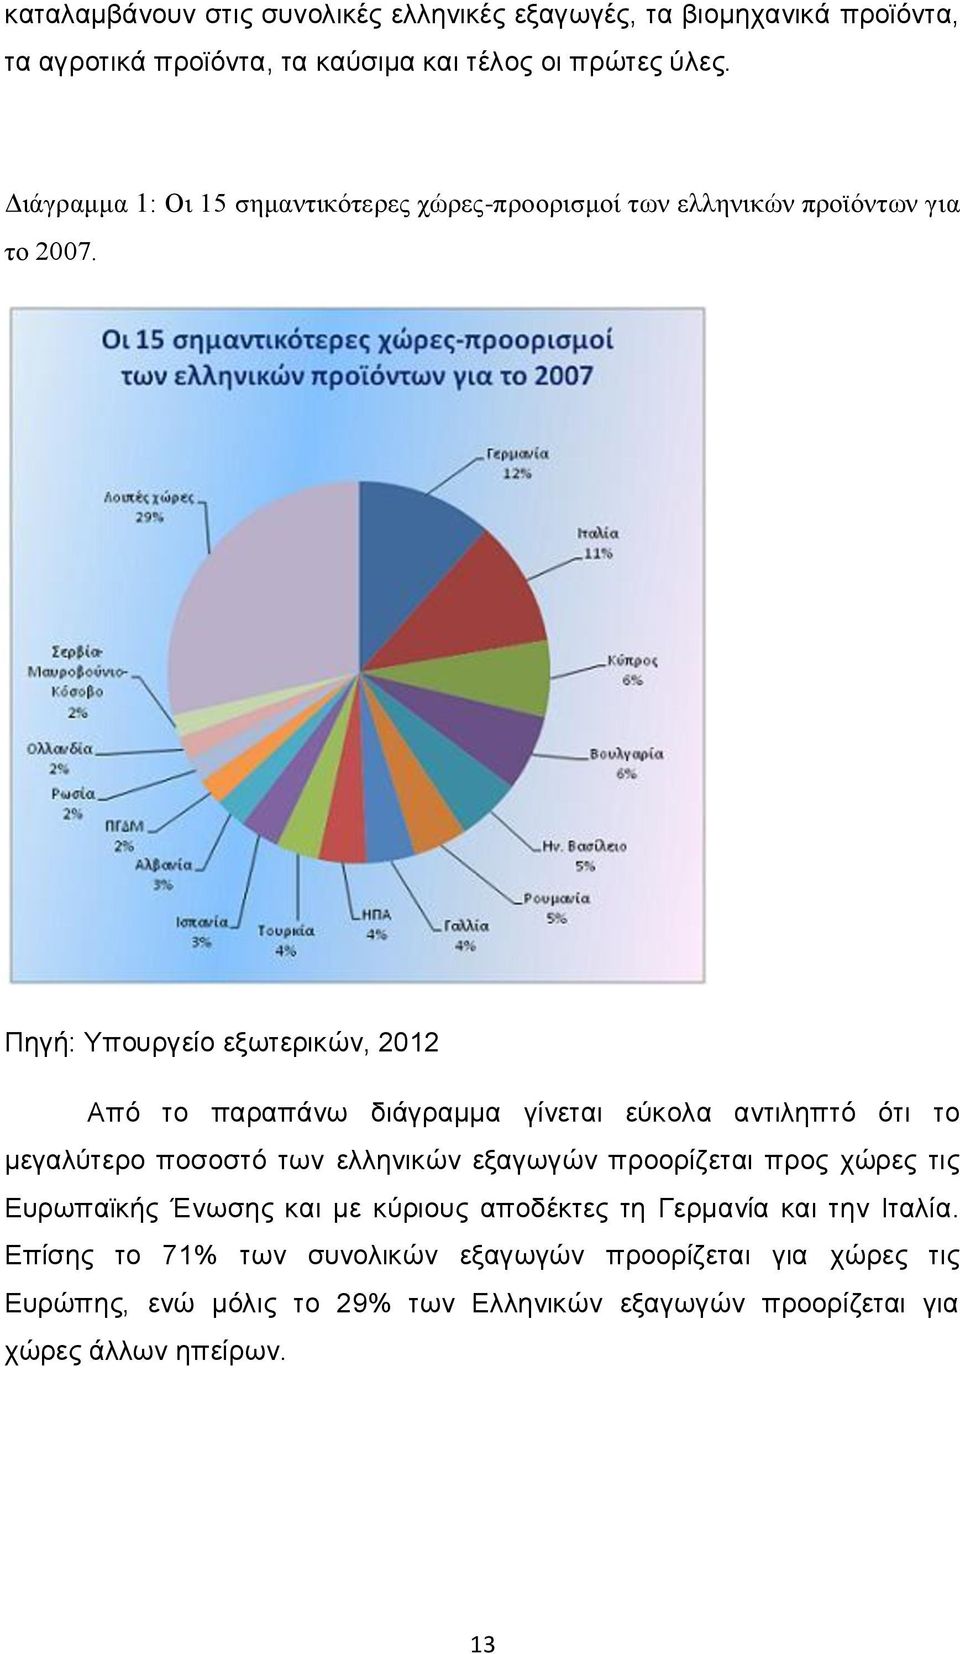 Πηγή: Υπουργείο εξωτερικών, 2012 Από το παραπάνω διάγραμμα γίνεται εύκολα αντιληπτό ότι το μεγαλύτερο ποσοστό των ελληνικών εξαγωγών προορίζεται προς